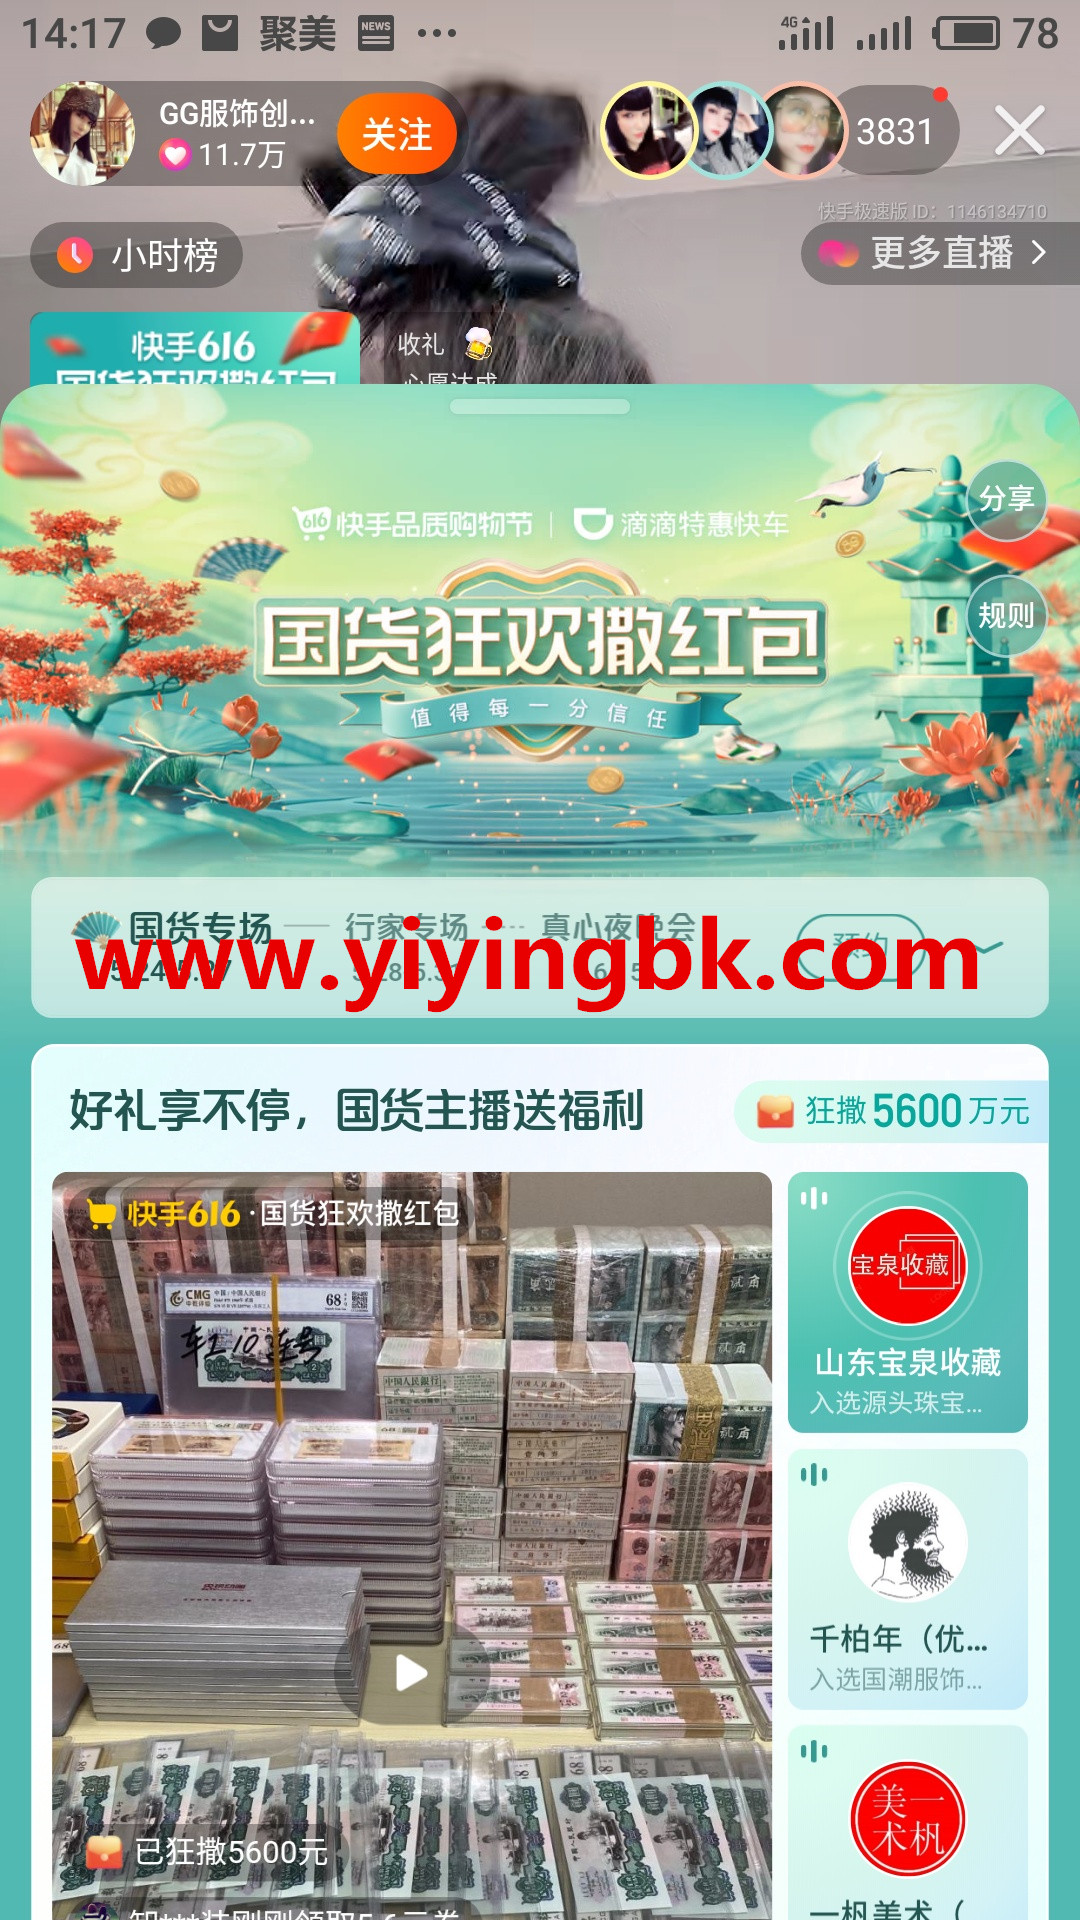 快手国货狂欢撒5600万元免费红包，www.yiyingbk.com